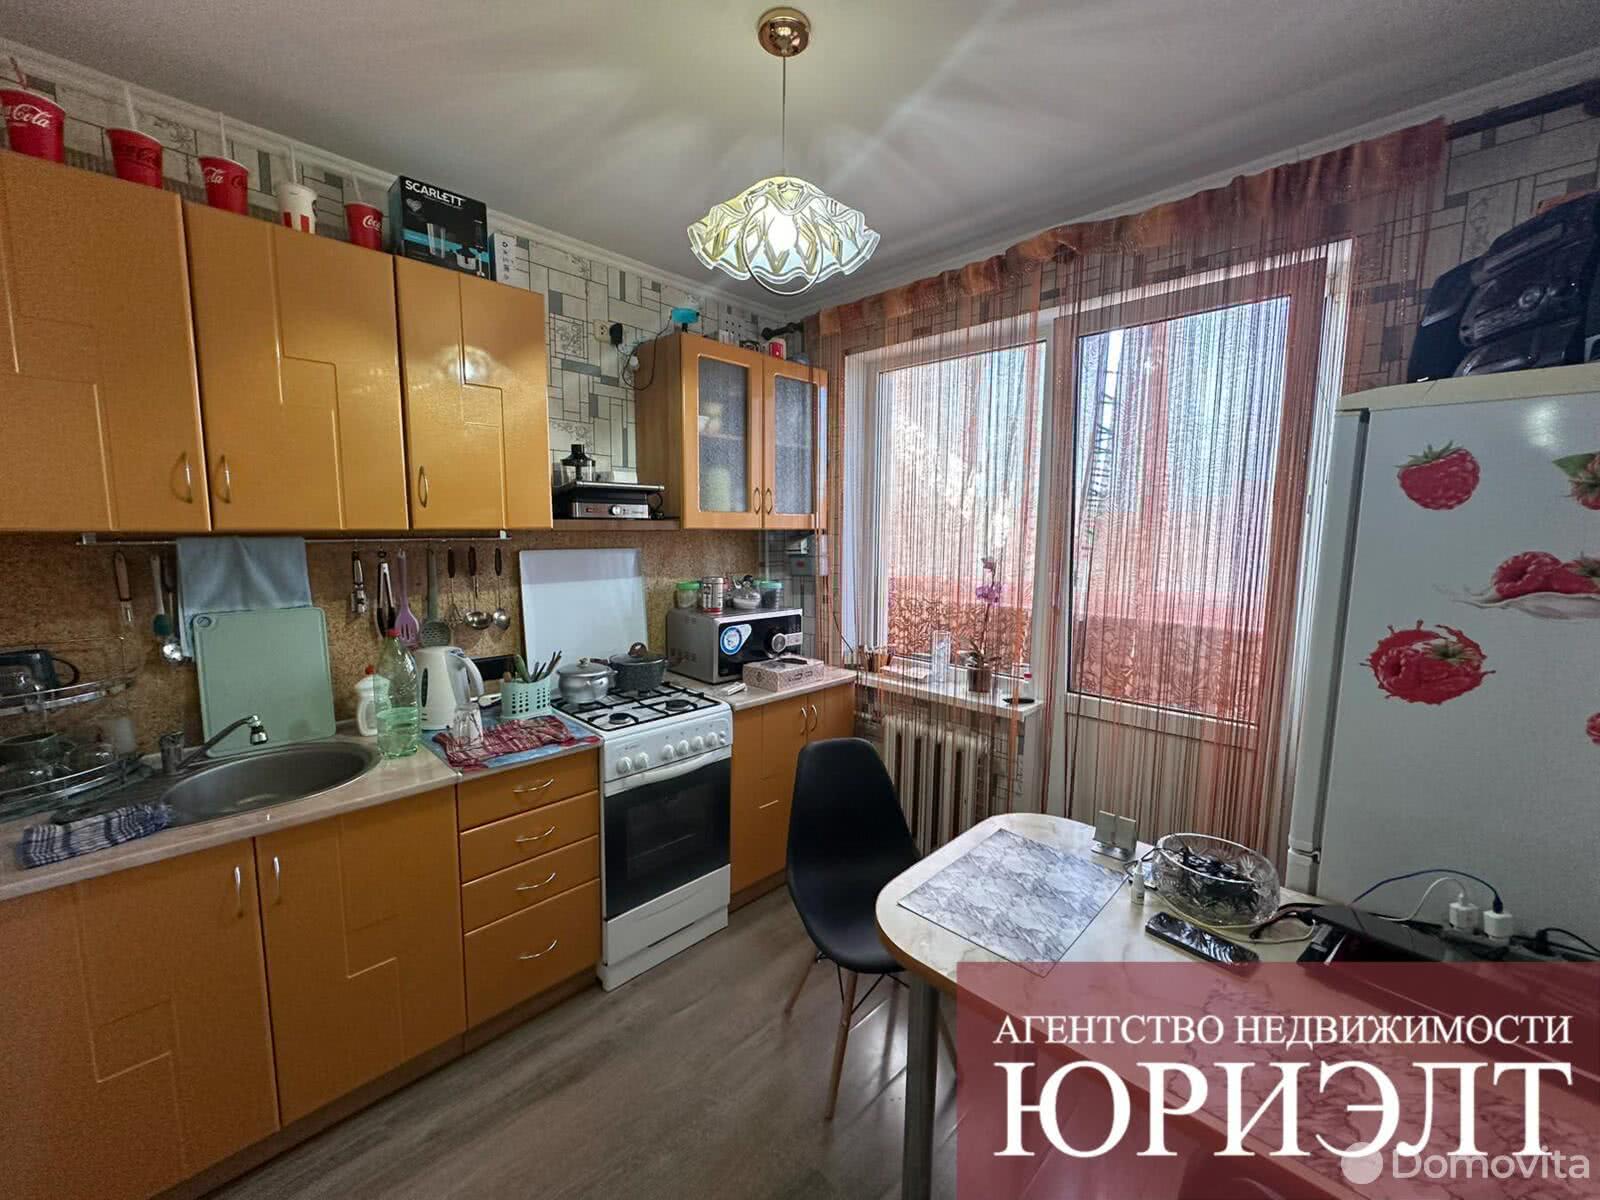 квартира, Брест, ул. Рокоссовского, д. 1, стоимость продажи 94 995 р.